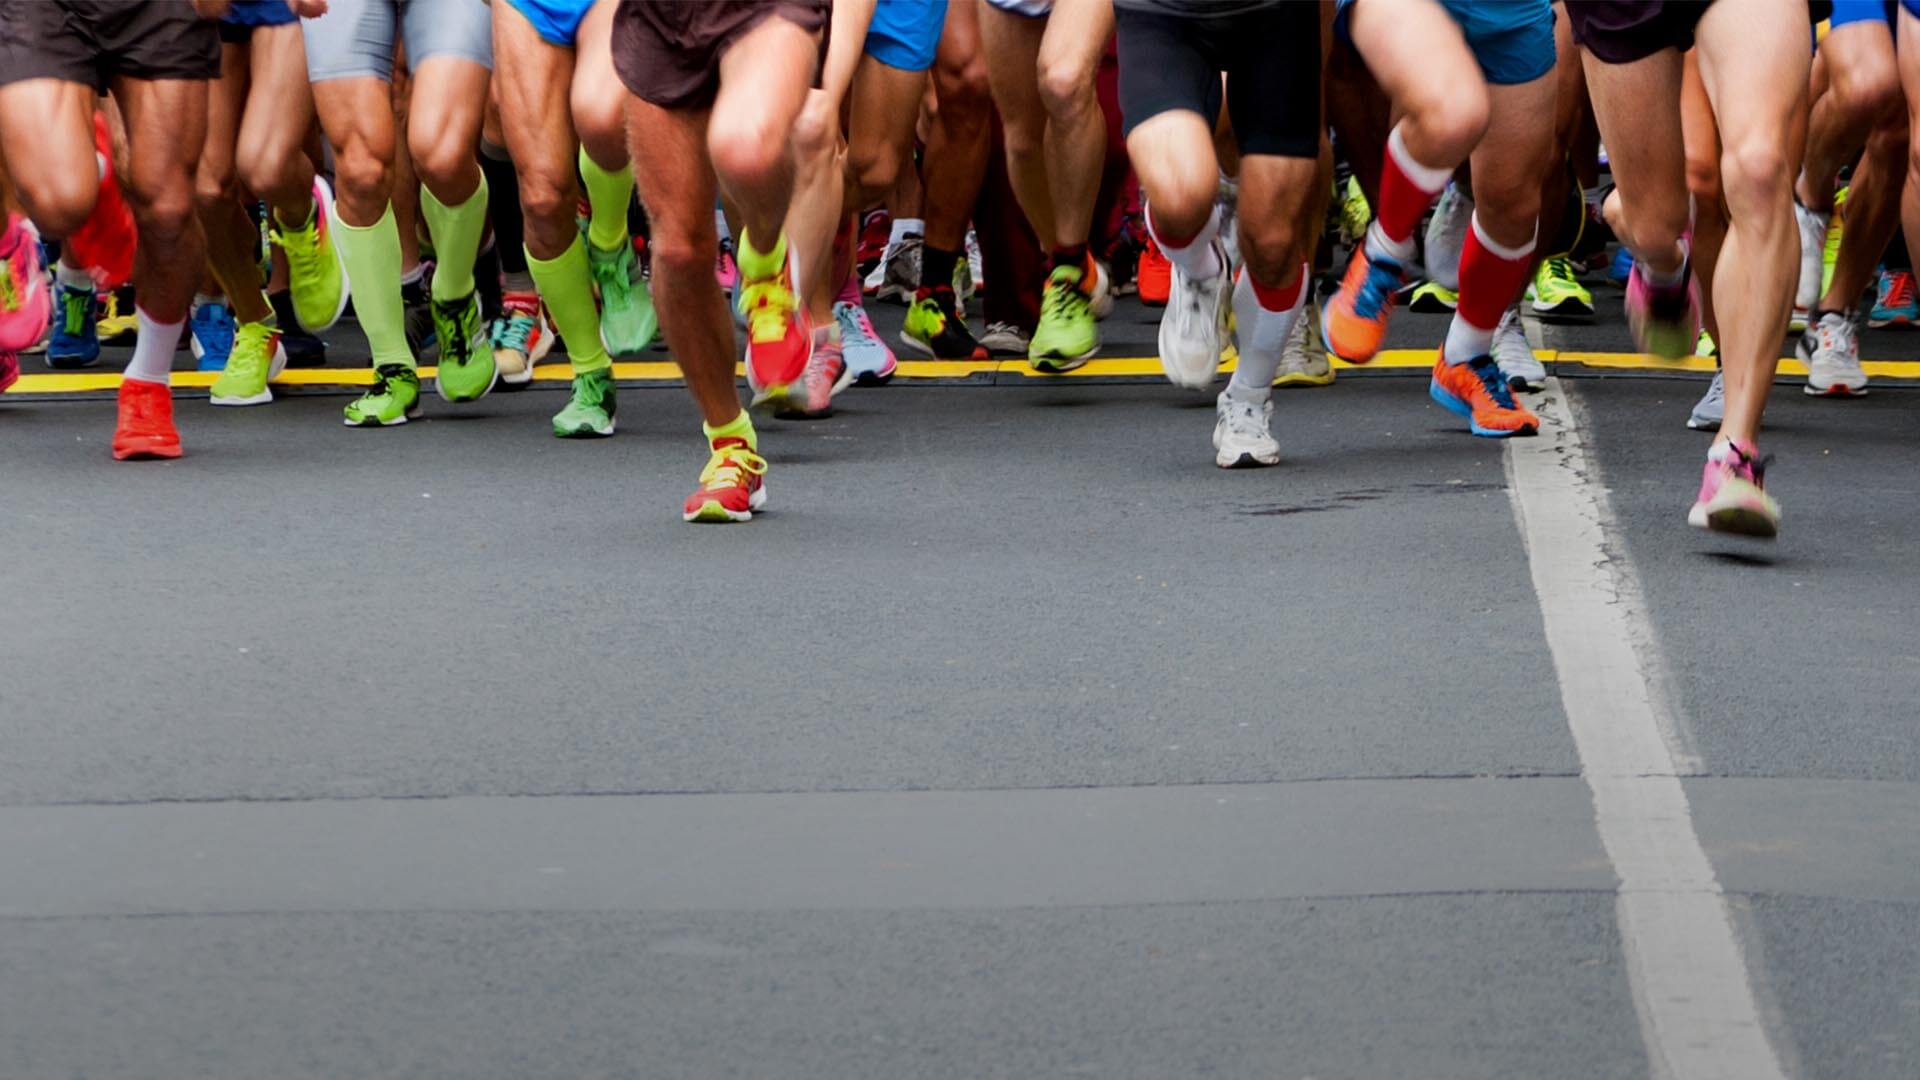 Đã đến lúc các giải chạy marathon cần được quy định chặt chẽ hơn, đặc biệt là về vấn đề an toàn (Ảnh: iRace)